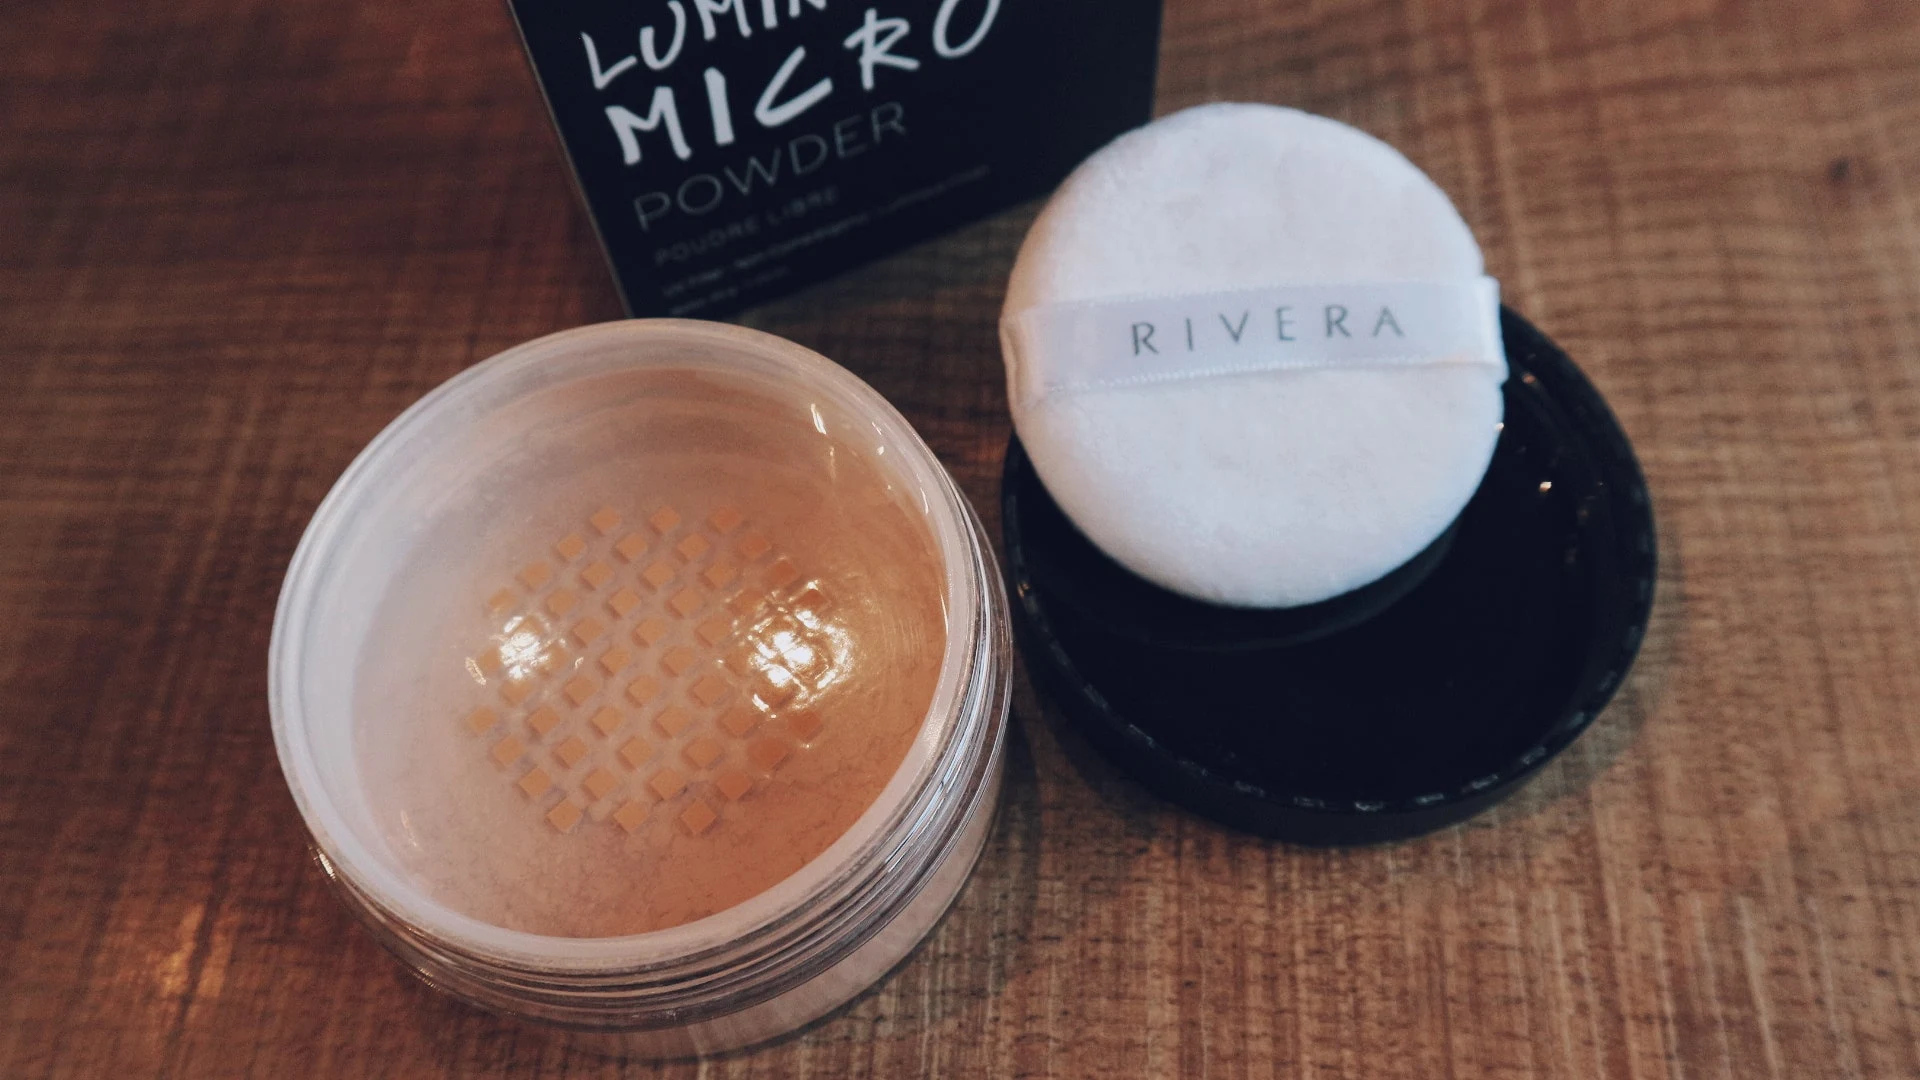 Rivera Cosmetics